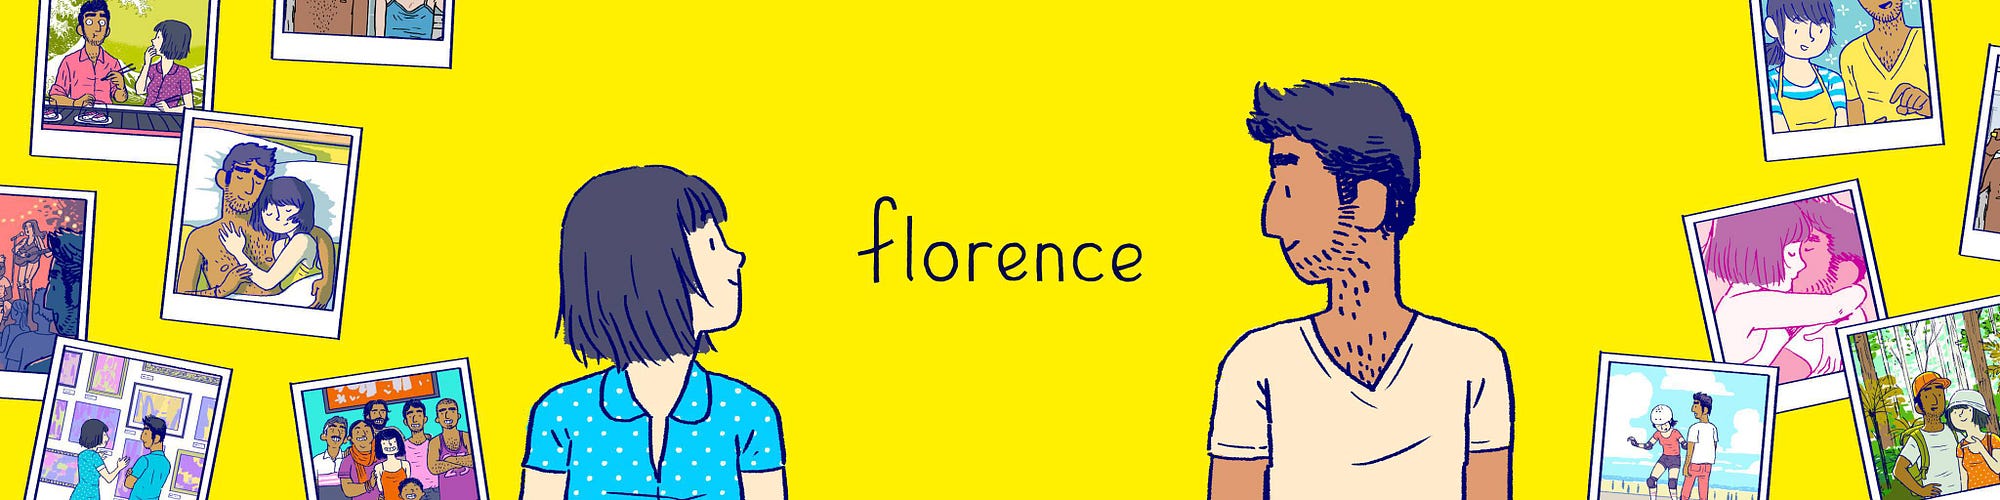 Florence: el juego para celular para los que no juegan mucho